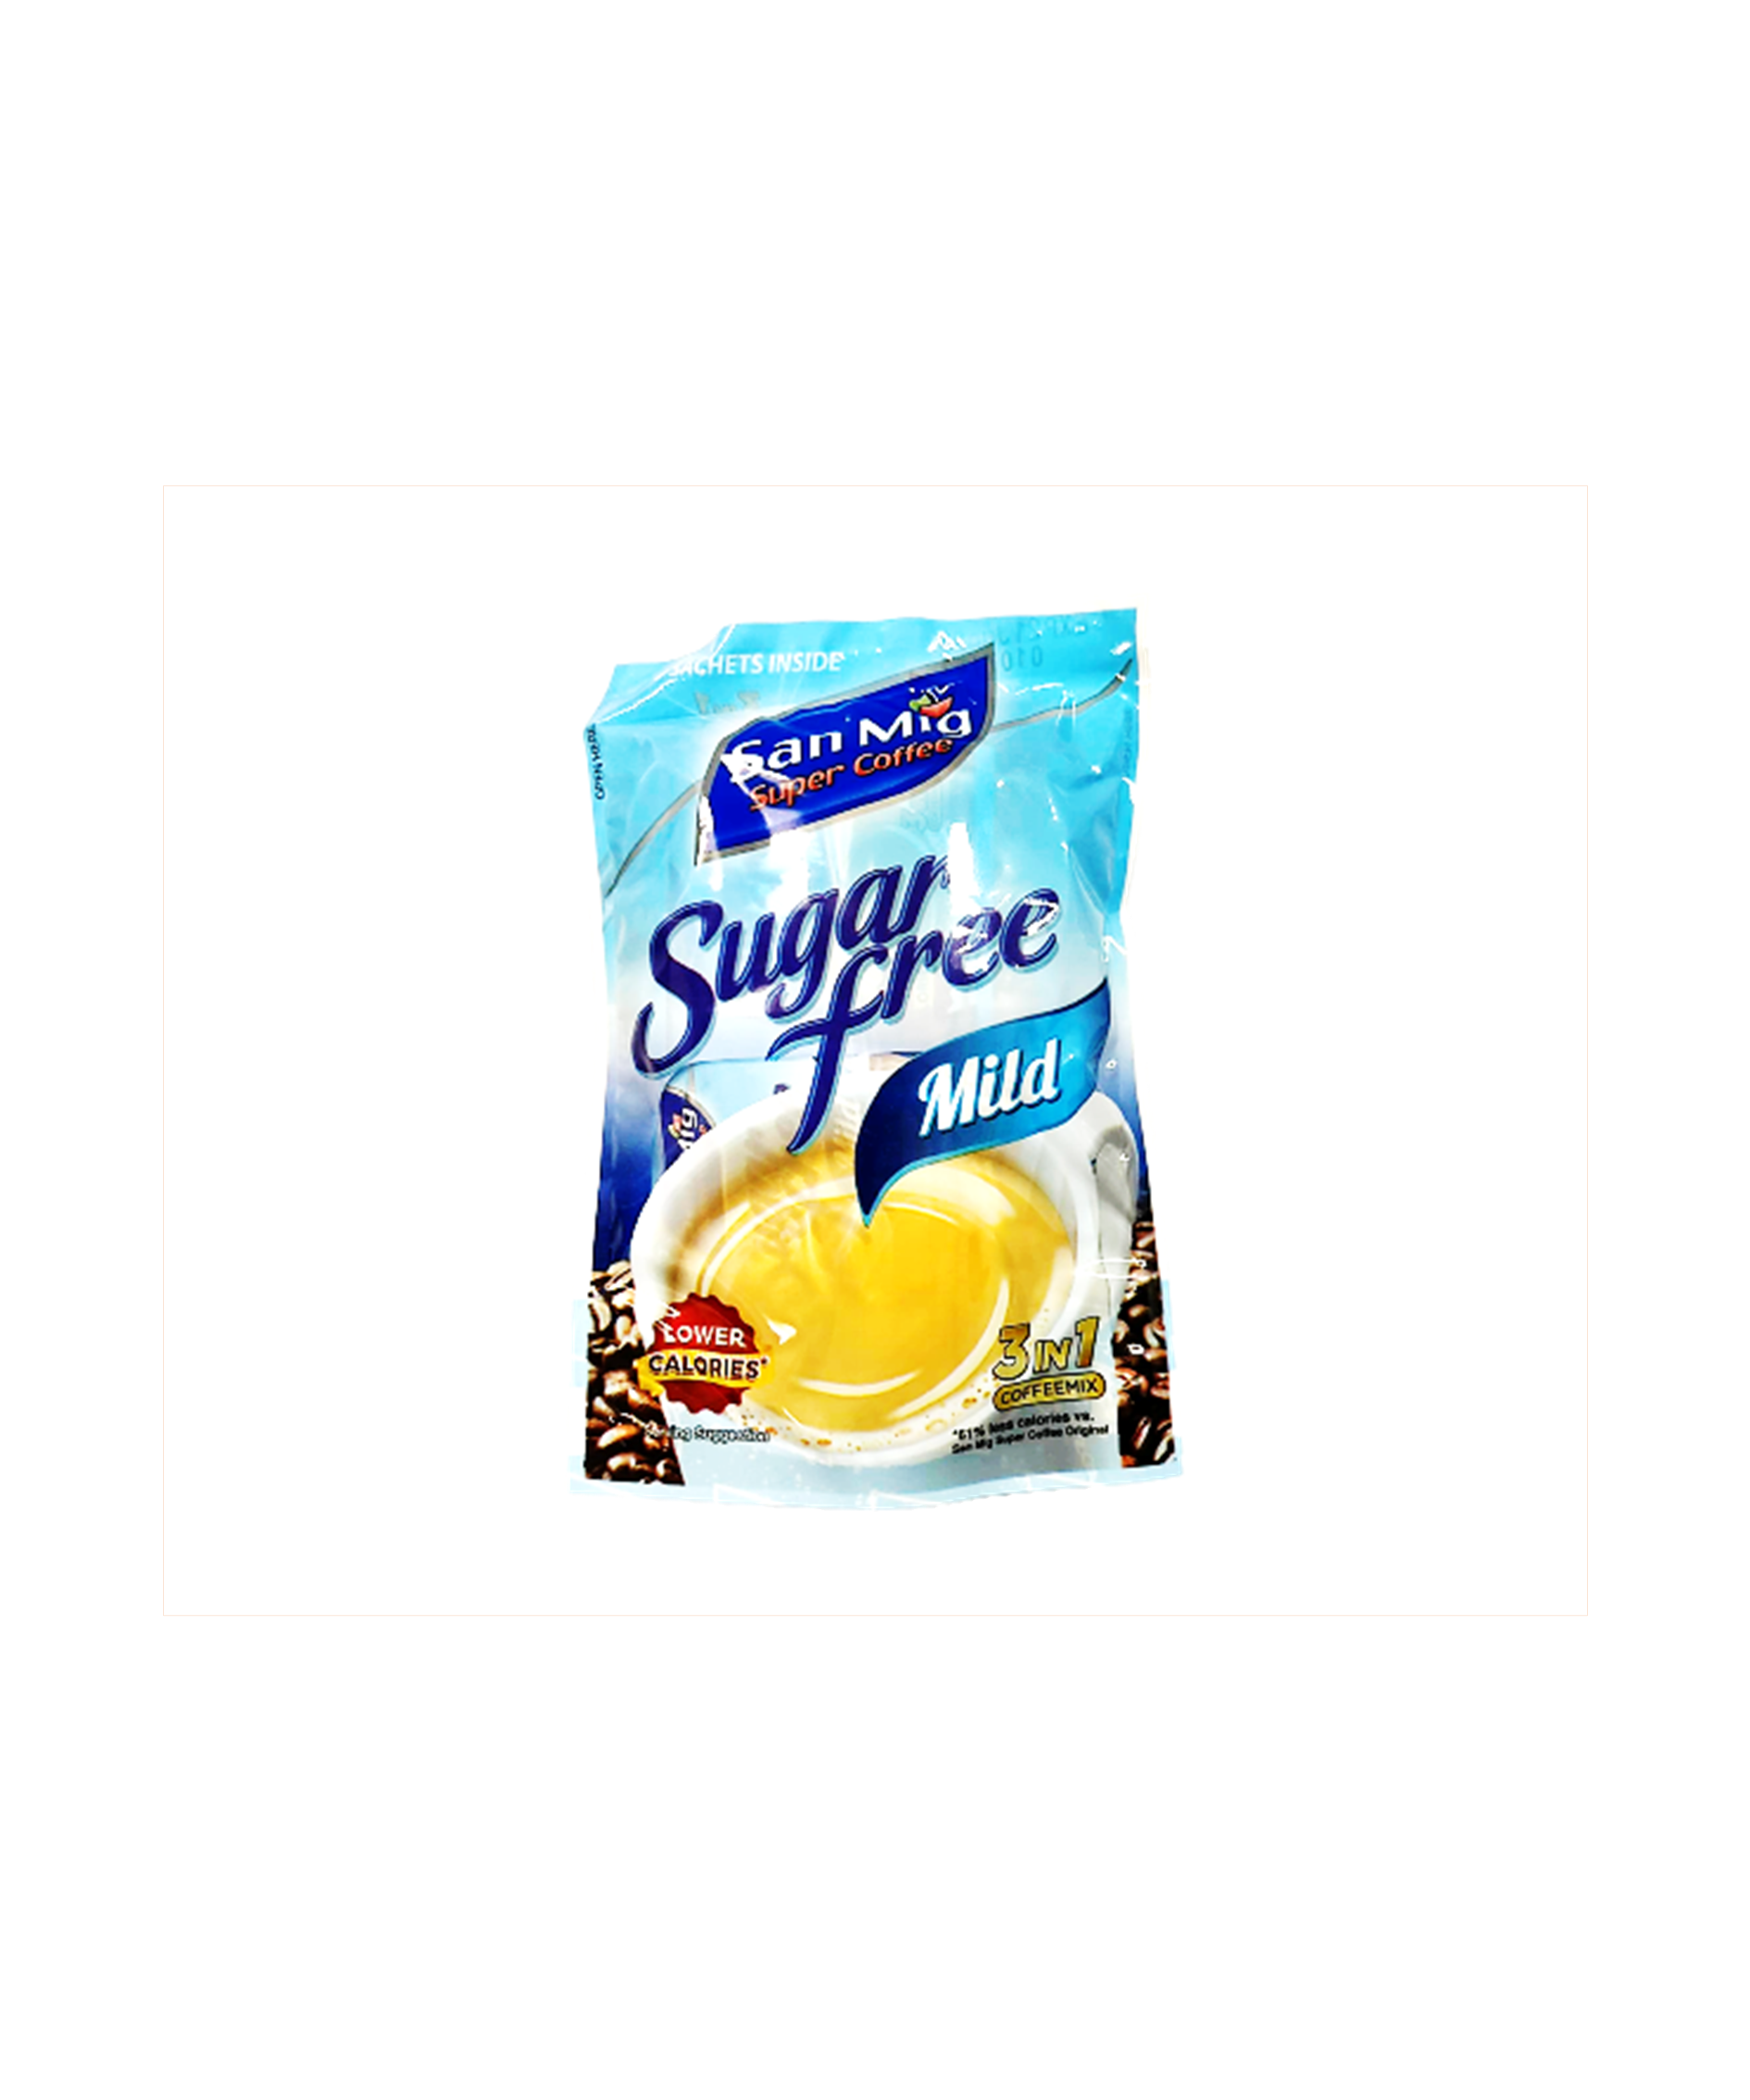 San Mig Coffee (Sugar Free) 10x7g – Mild